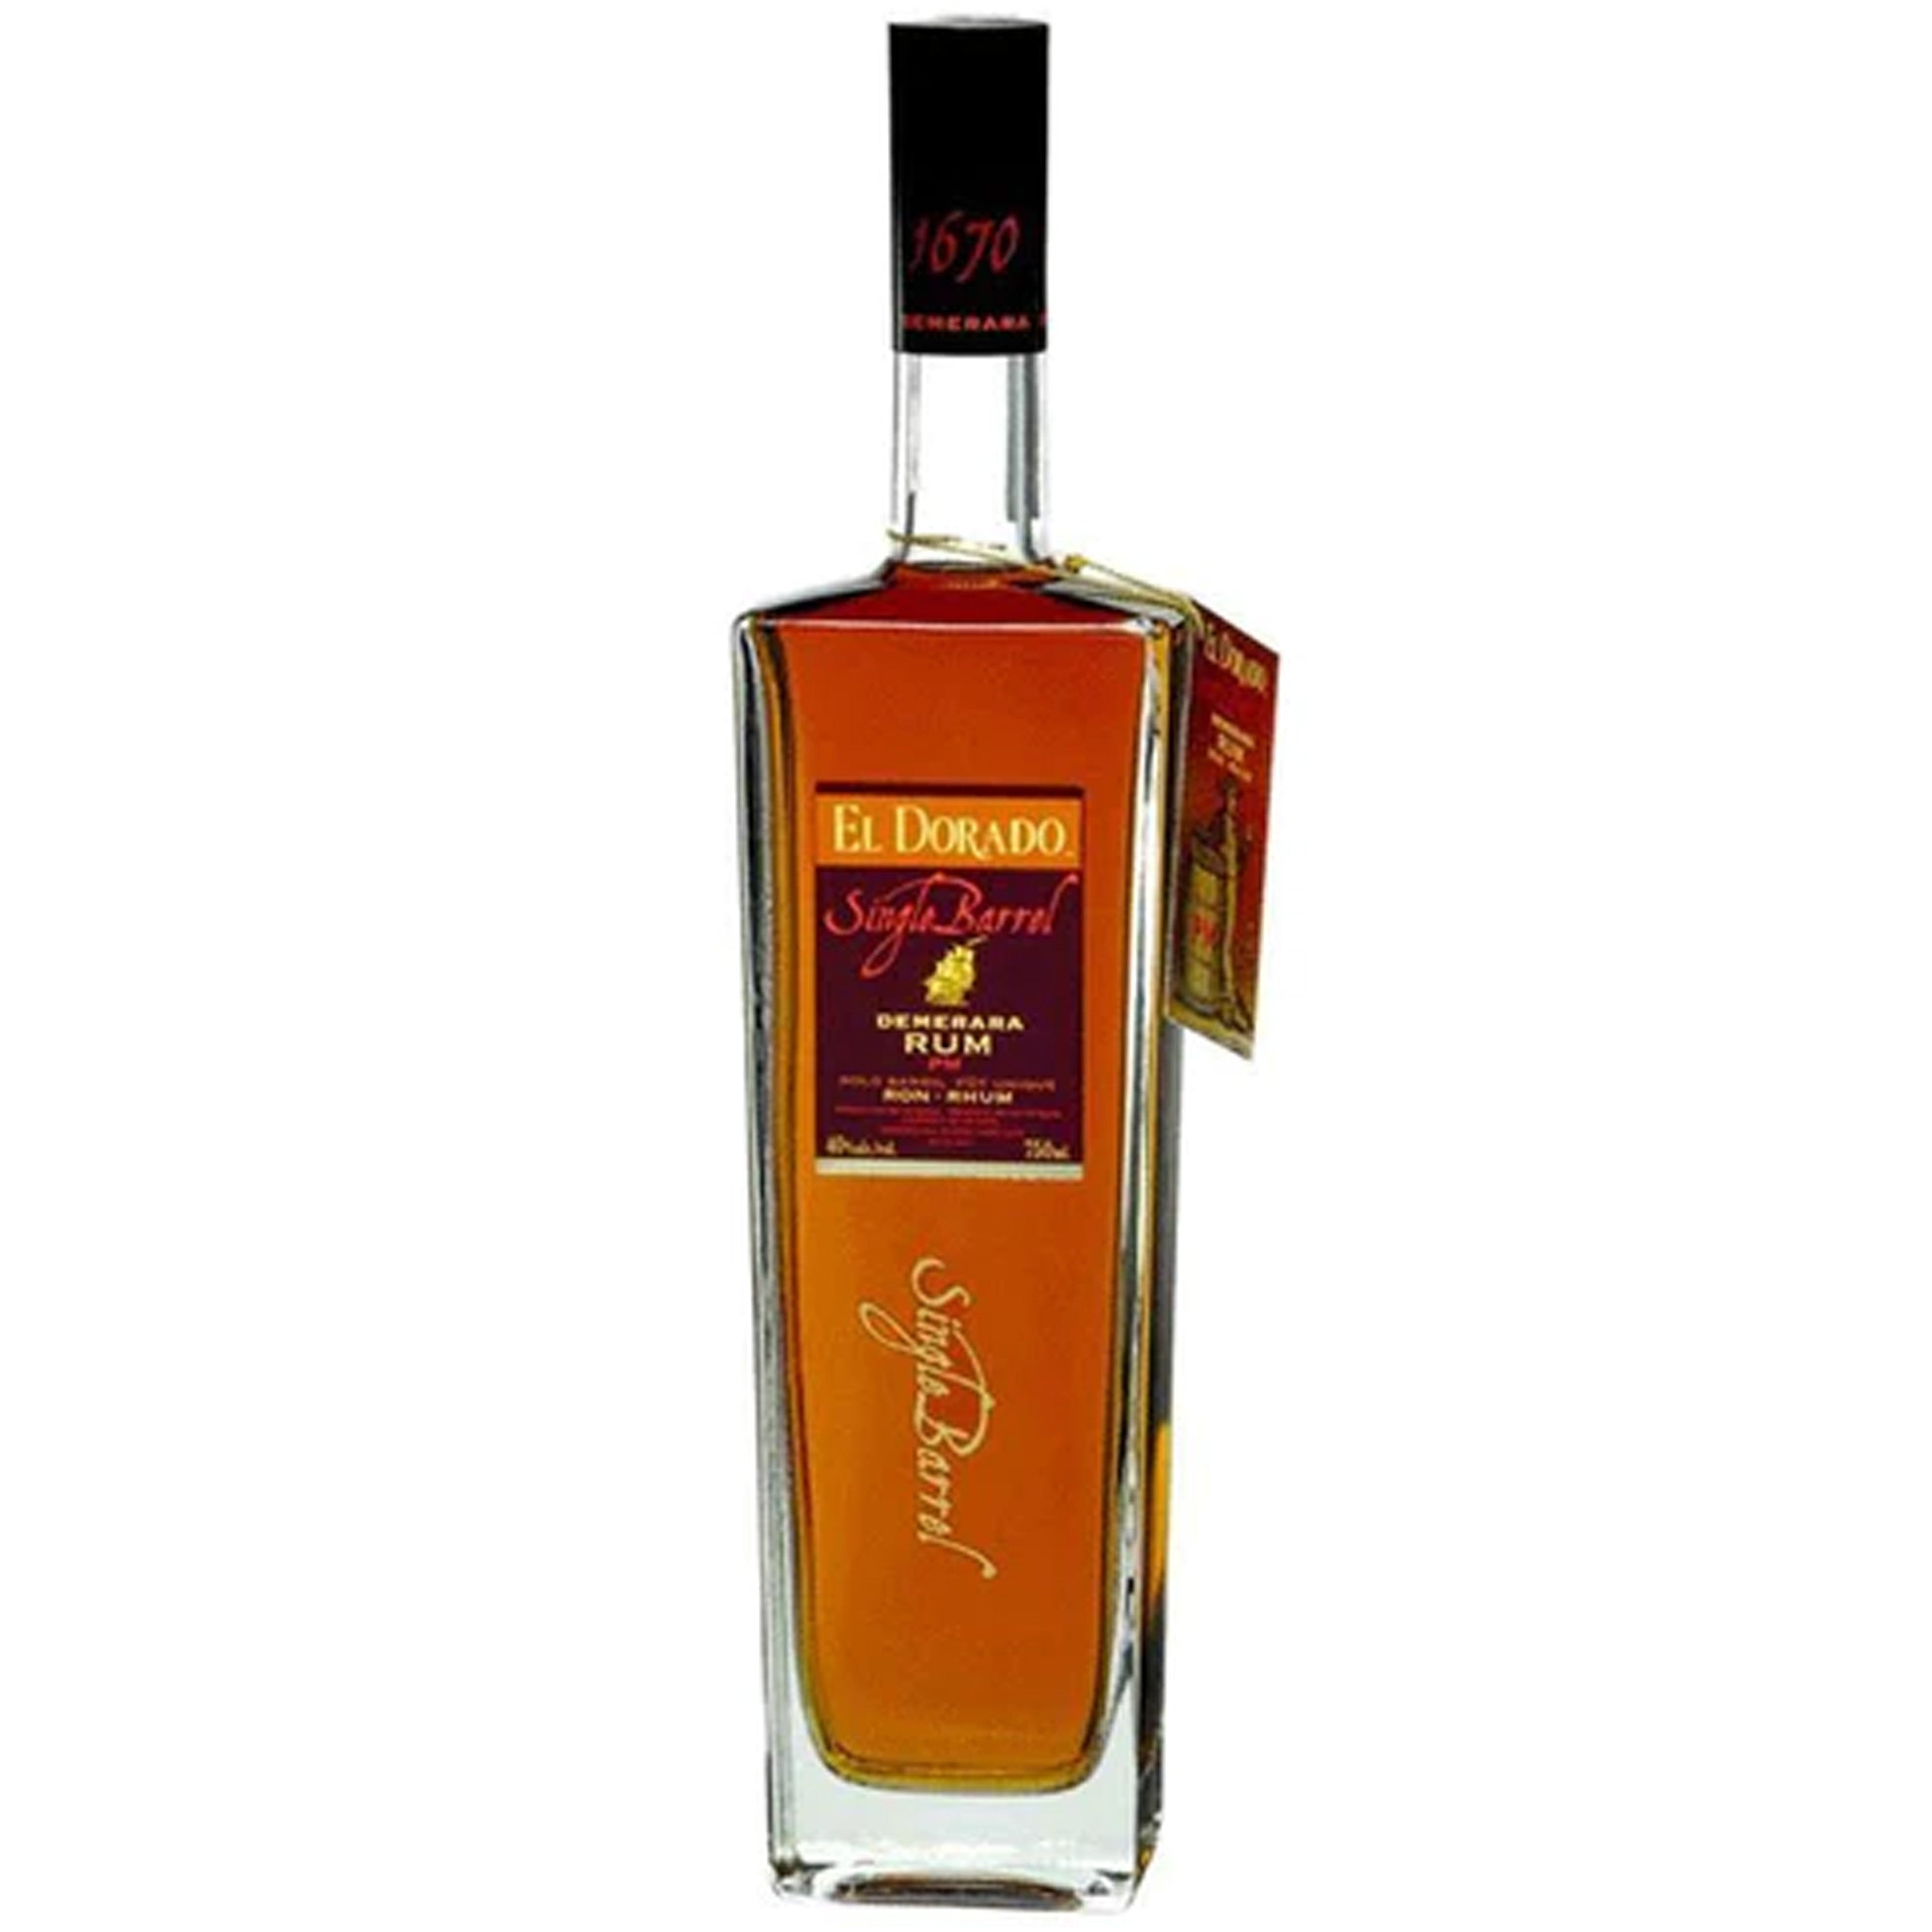 El Dorado Single Barrel PM Rum